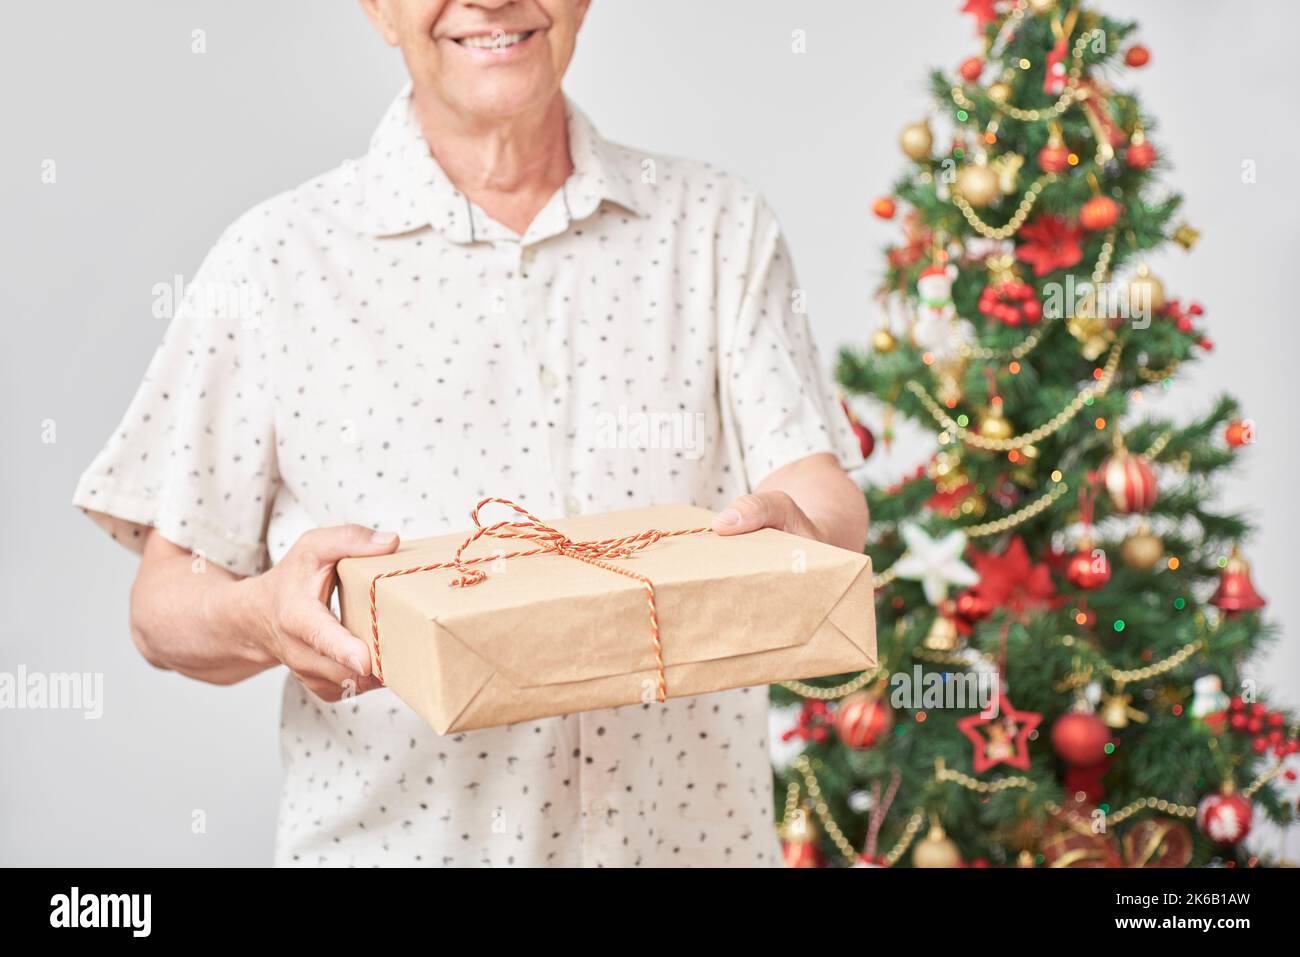 Ein älterer hispanischer Mann lächelt, als er der Kamera ein Weihnachtsgeschenk überreicht. Konzept: Die Freude am Schenken während der Feiertage. Komposition mit Stockfoto